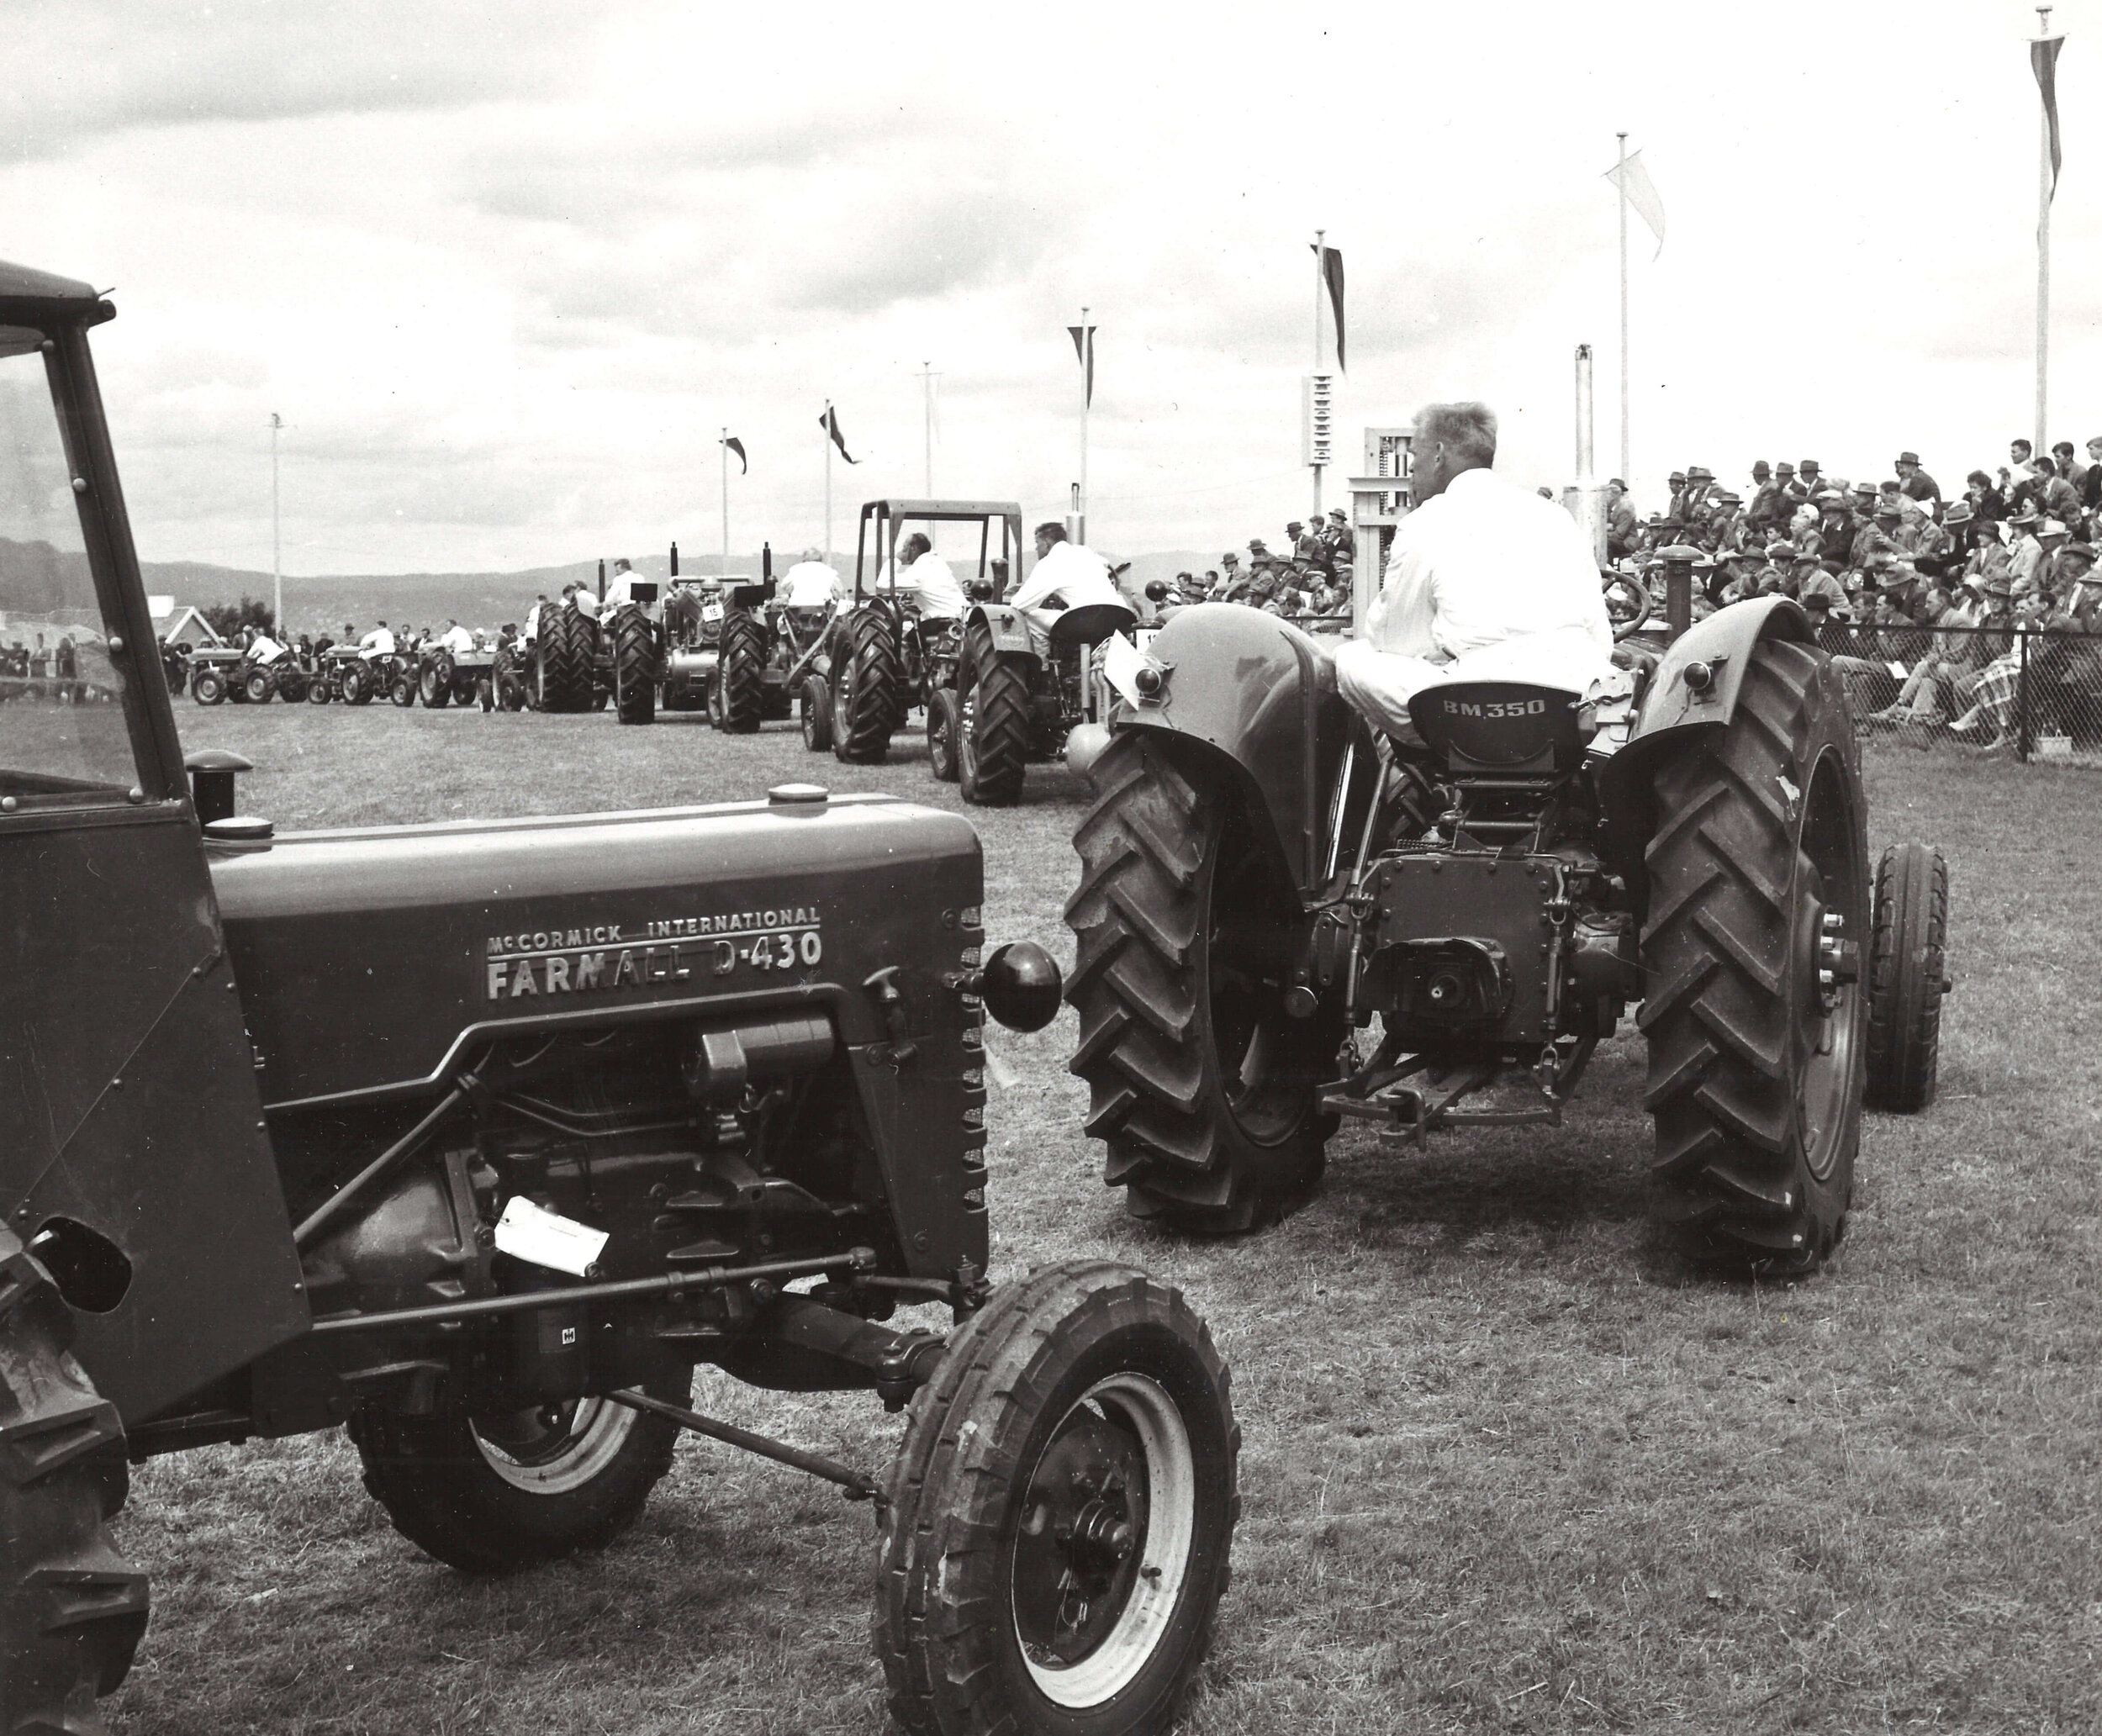  Ekebergutstillingen skulle bidra til å akselerere den mekaniske utviklingen i landbruket. I 1959 var det 50.000 traktorer i Norge mot 10.000 10 år tidligere (i dag har Norge 284.679 traktorer iflg SSB-tall per 31.12.2018). 